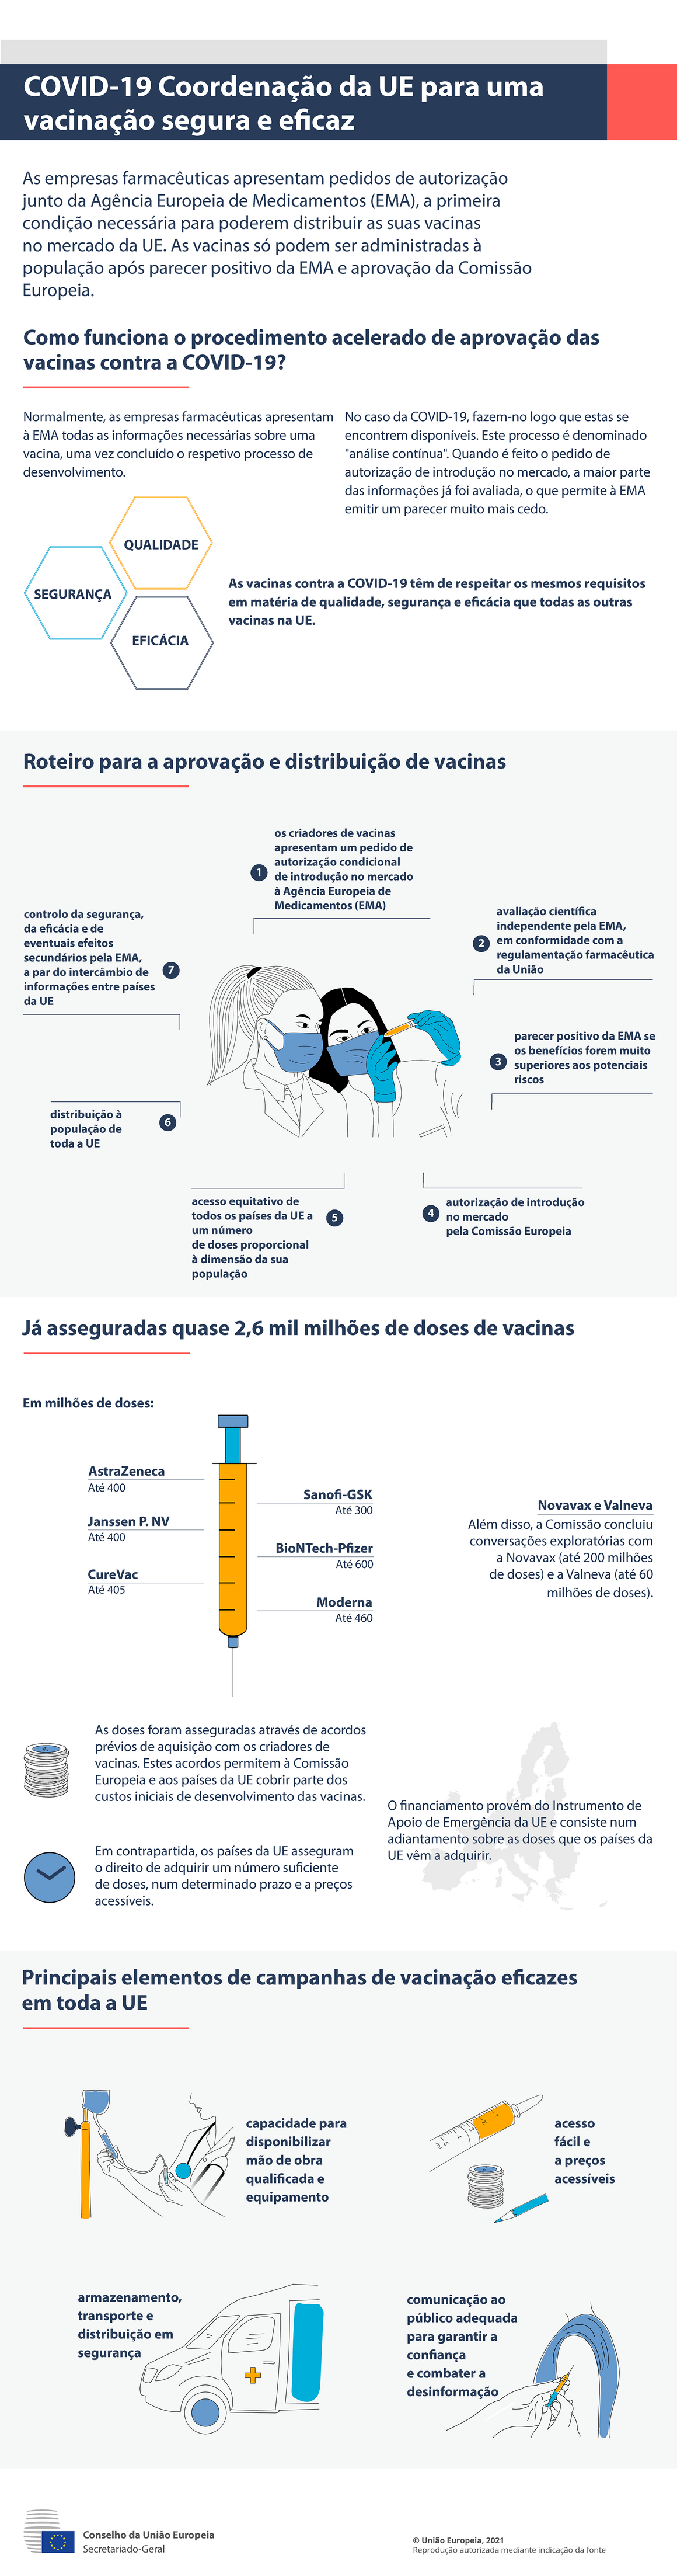 Infografia — COVID-19: Coordenação da UE para uma vacinação segura e eficaz